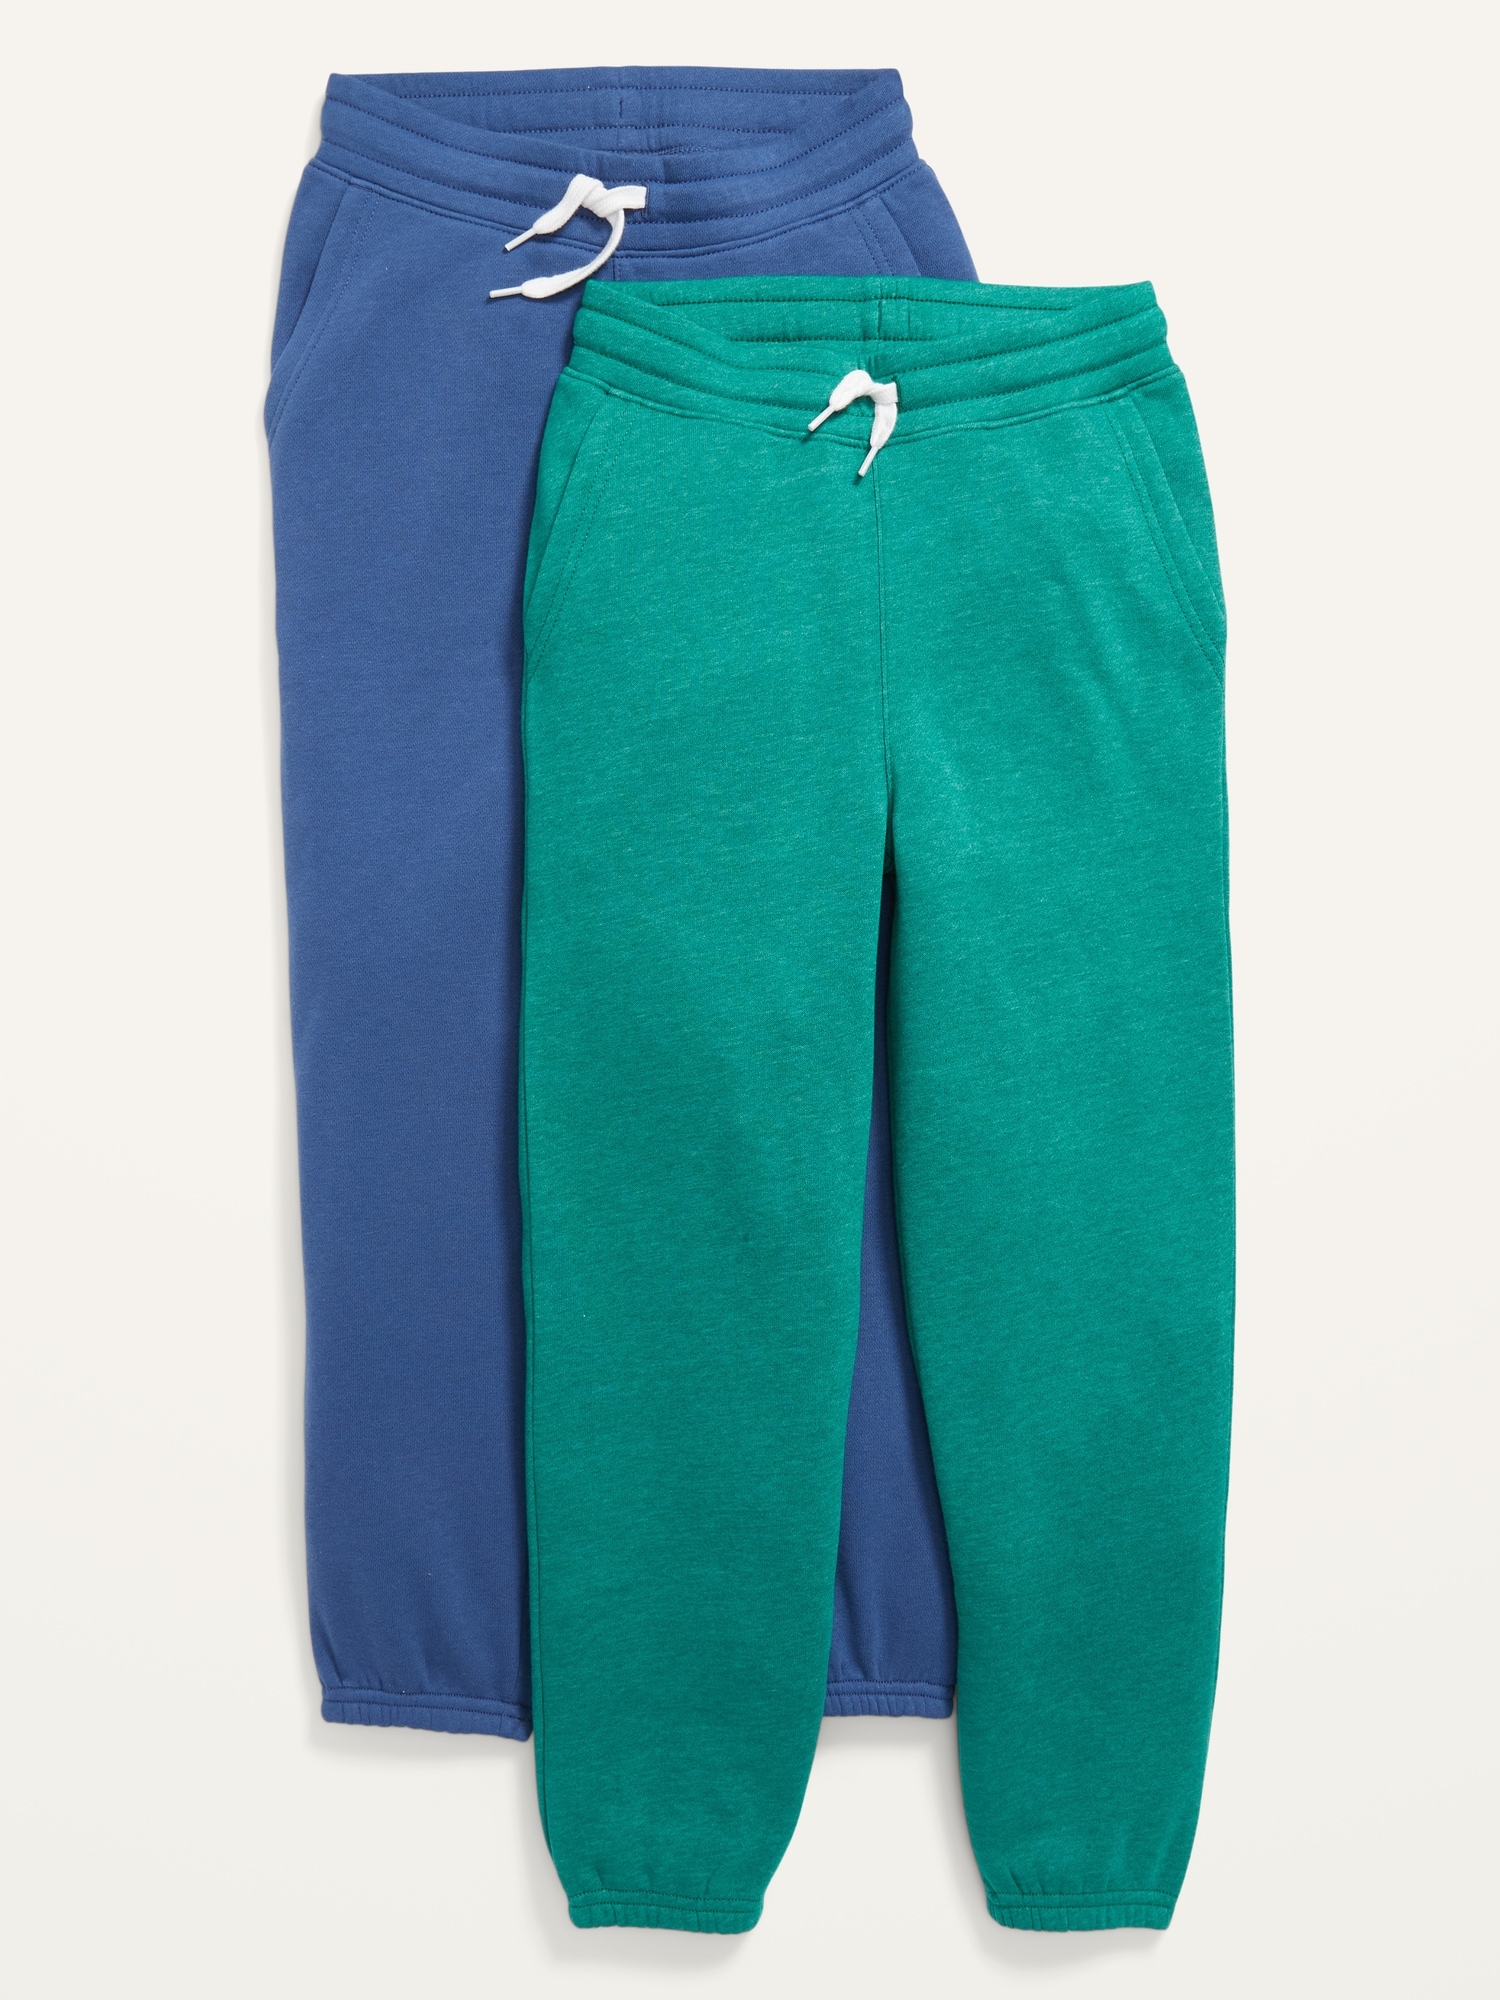 Vintage Gender-Neutral Jogger Sweatpants 2-Pack For Kids | Old Navy